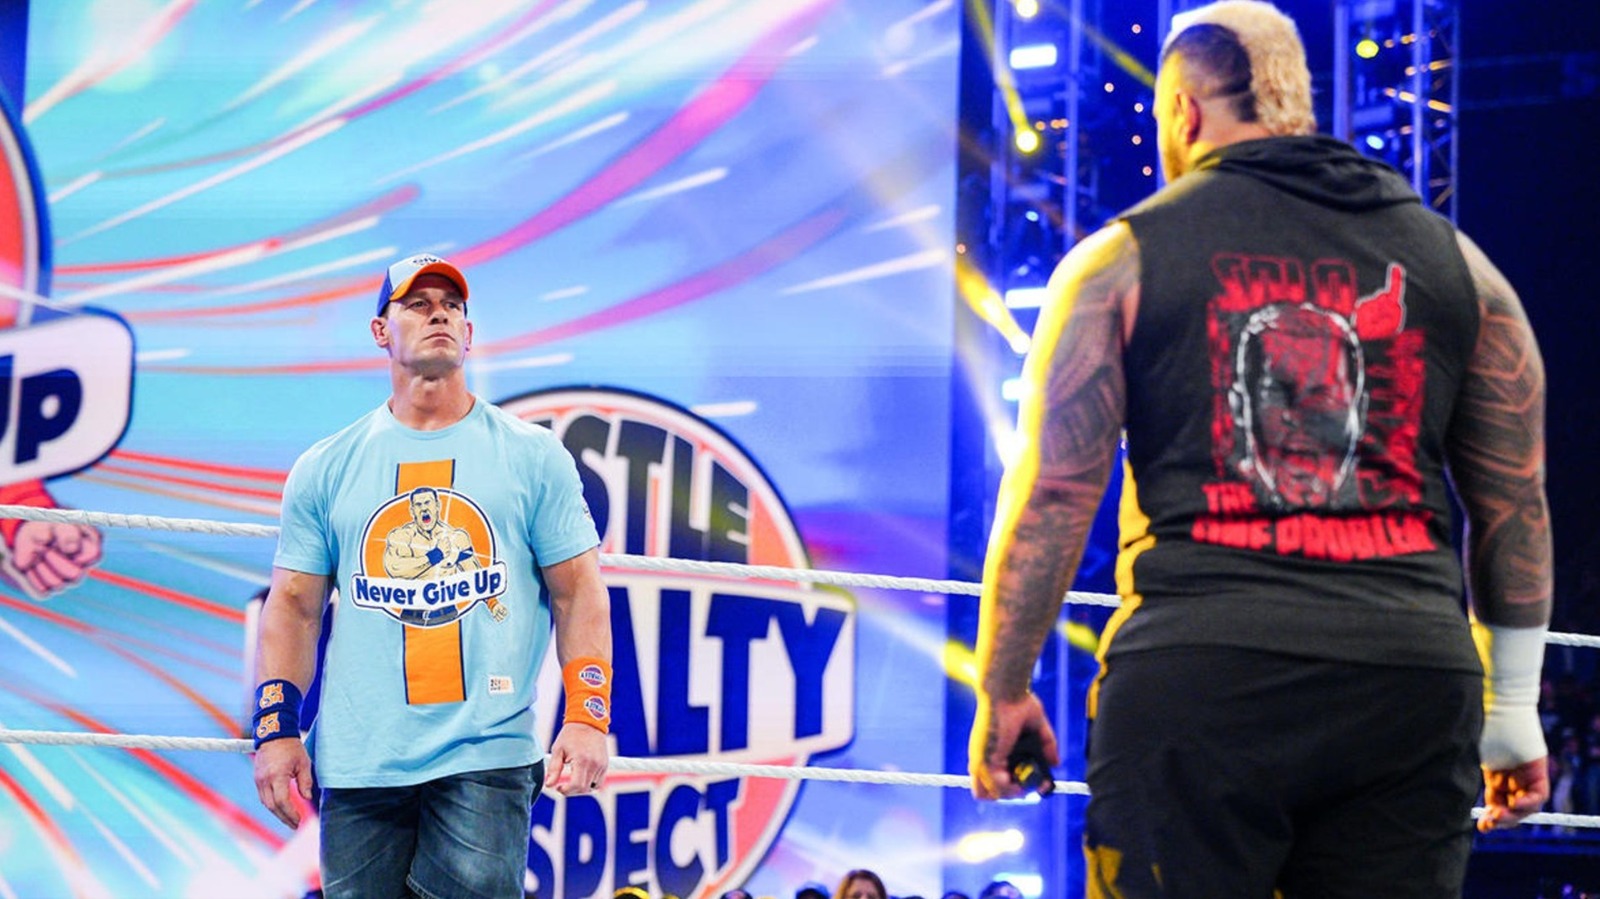 John Cena cree que otra estrella de la WWE es la más grande de todos los tiempos, no él